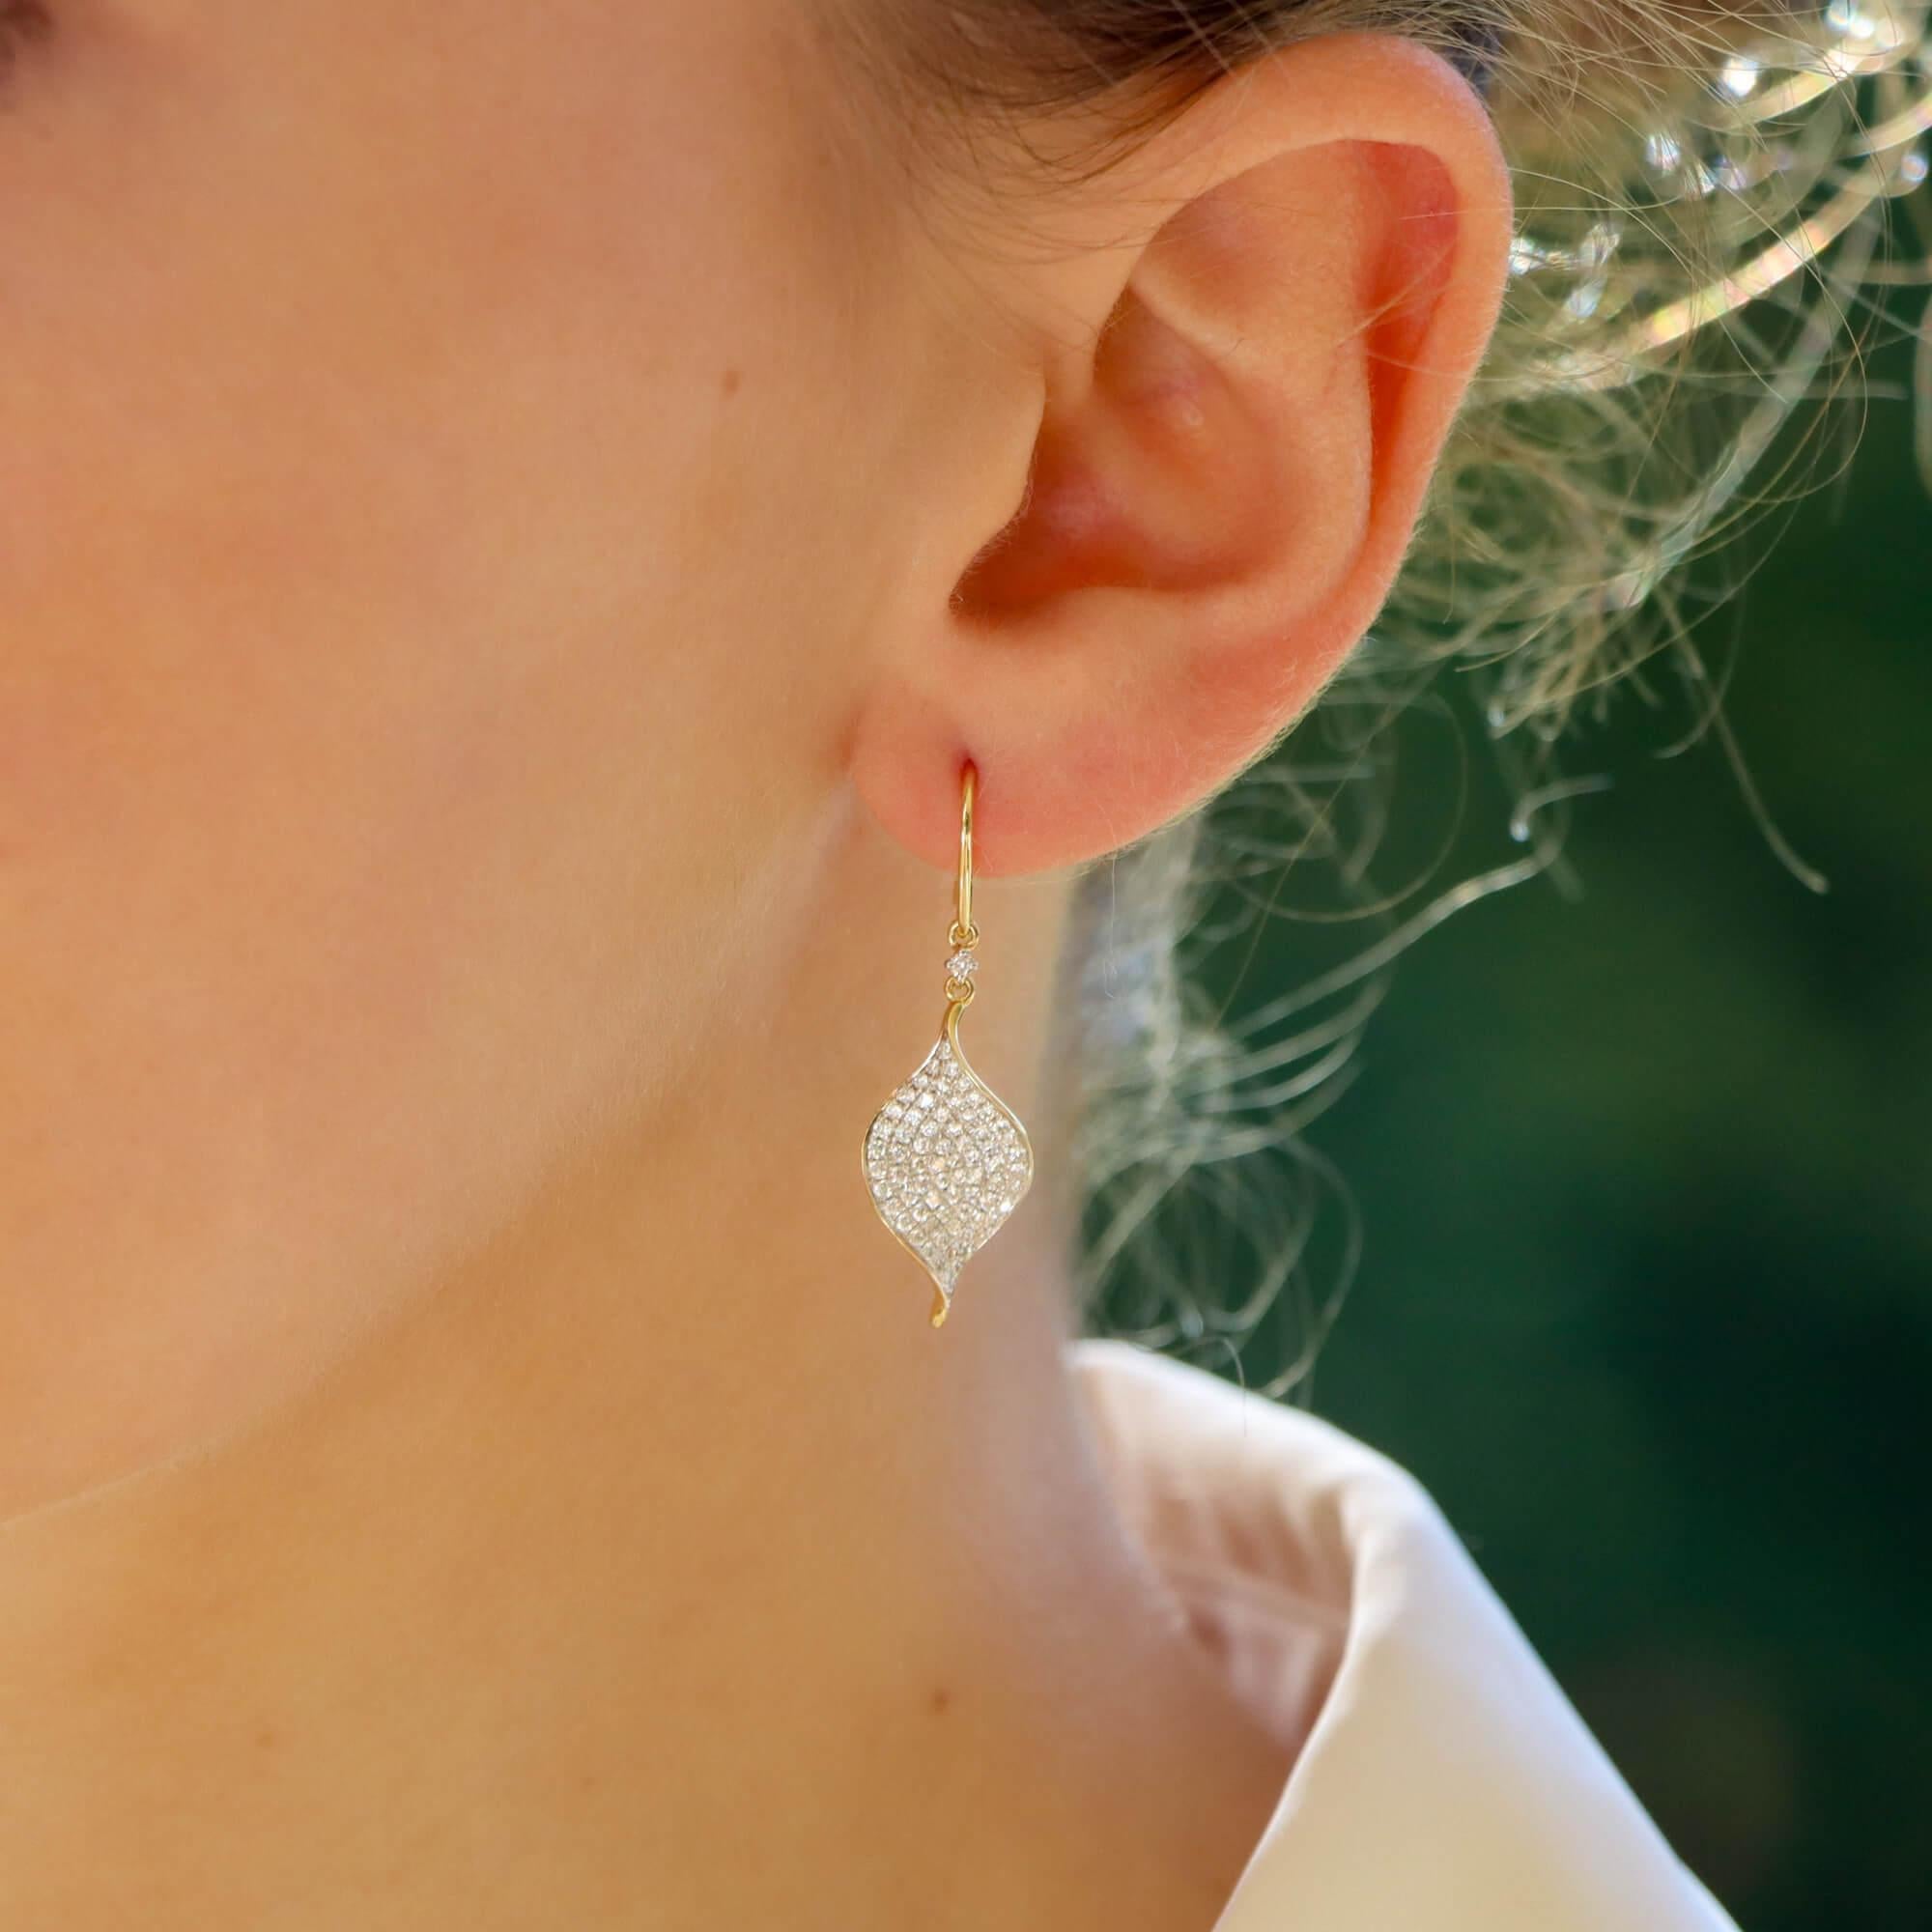 Ein wunderschönes Paar zeitgenössischer Diamant-Ohrringe aus 18 Karat Gelbgold.

Jeder Ohrring besteht zunächst aus einem mit Diamanten besetzten Blatt, das leicht gedreht ist, damit die Diamanten das Licht aus allen Winkeln einfangen, sobald sie am